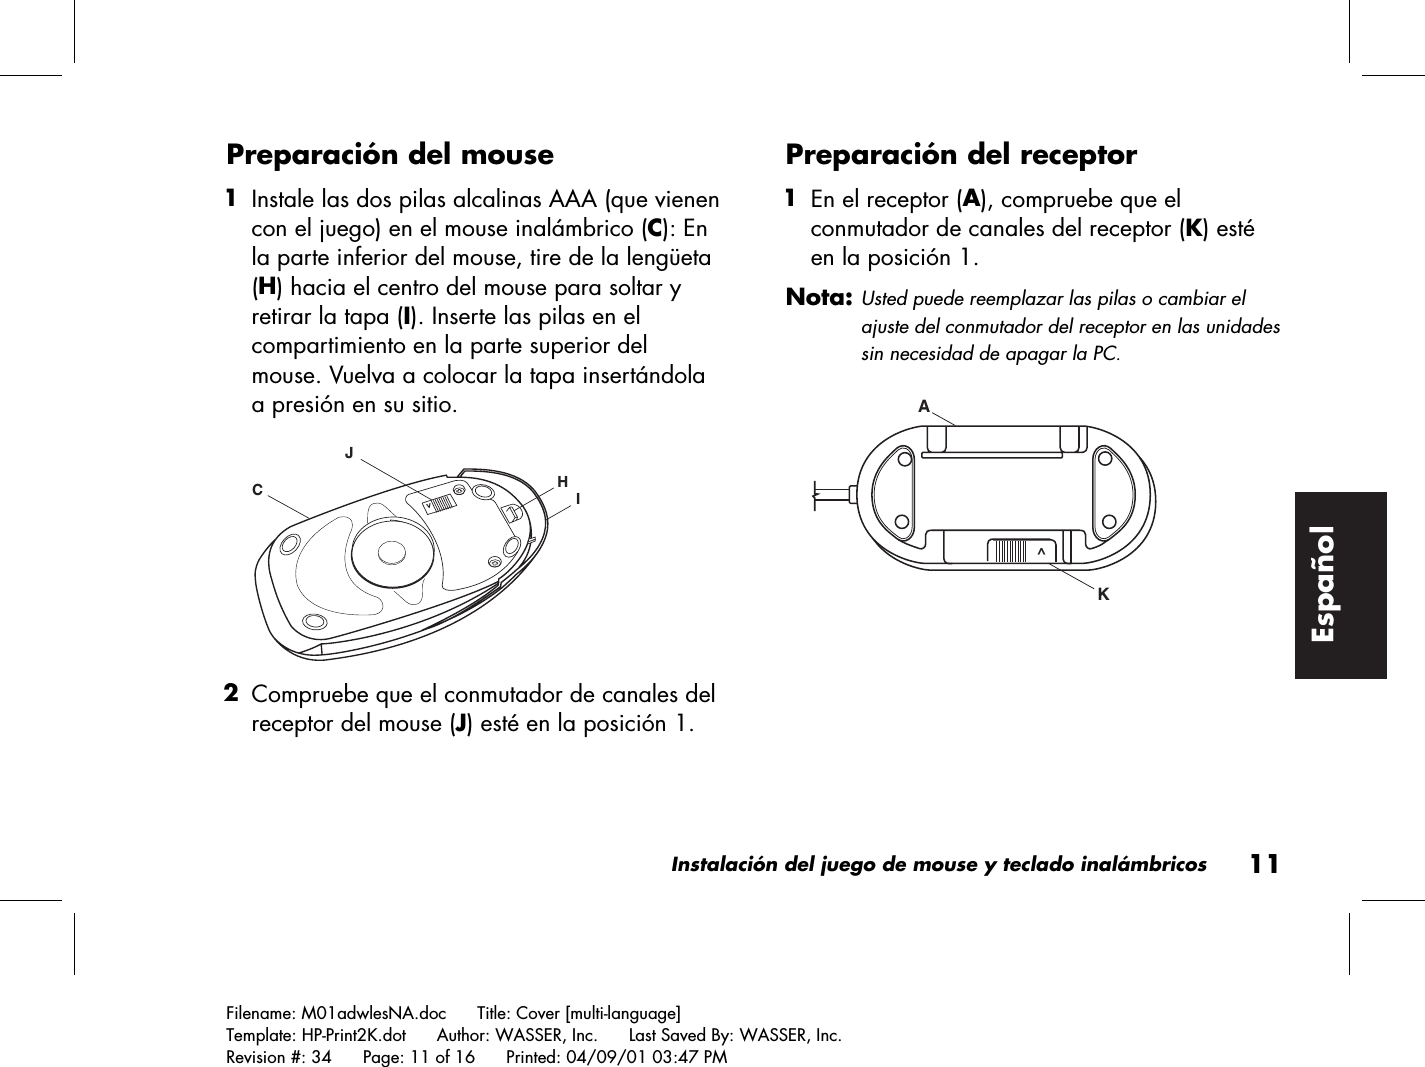 Instalación del juego de mouse y teclado inalámbricos11Filename: M01adwlesNA.doc      Title: Cover [multi-language]Template: HP-Print2K.dot      Author: WASSER, Inc.      Last Saved By: WASSER, Inc.Revision #: 34      Page: 11 of 16      Printed: 04/09/01 03:47 PMEspañolPreparación del mouse 1 Instale las dos pilas alcalinas AAA (que vienencon el juego) en el mouse inalámbrico (C): Enla parte inferior del mouse, tire de la lengüeta(H) hacia el centro del mouse para soltar yretirar la tapa (I). Inserte las pilas en elcompartimiento en la parte superior delmouse. Vuelva a colocar la tapa insertándolaa presión en su sitio.HIJC&gt; 2 Compruebe que el conmutador de canales delreceptor del mouse (J) esté en la posición 1.Preparación del receptor 1 En el receptor (A), compruebe que elconmutador de canales del receptor (K) estéen la posición 1.Nota: Usted puede reemplazar las pilas o cambiar elajuste del conmutador del receptor en las unidadessin necesidad de apagar la PC.KA ^